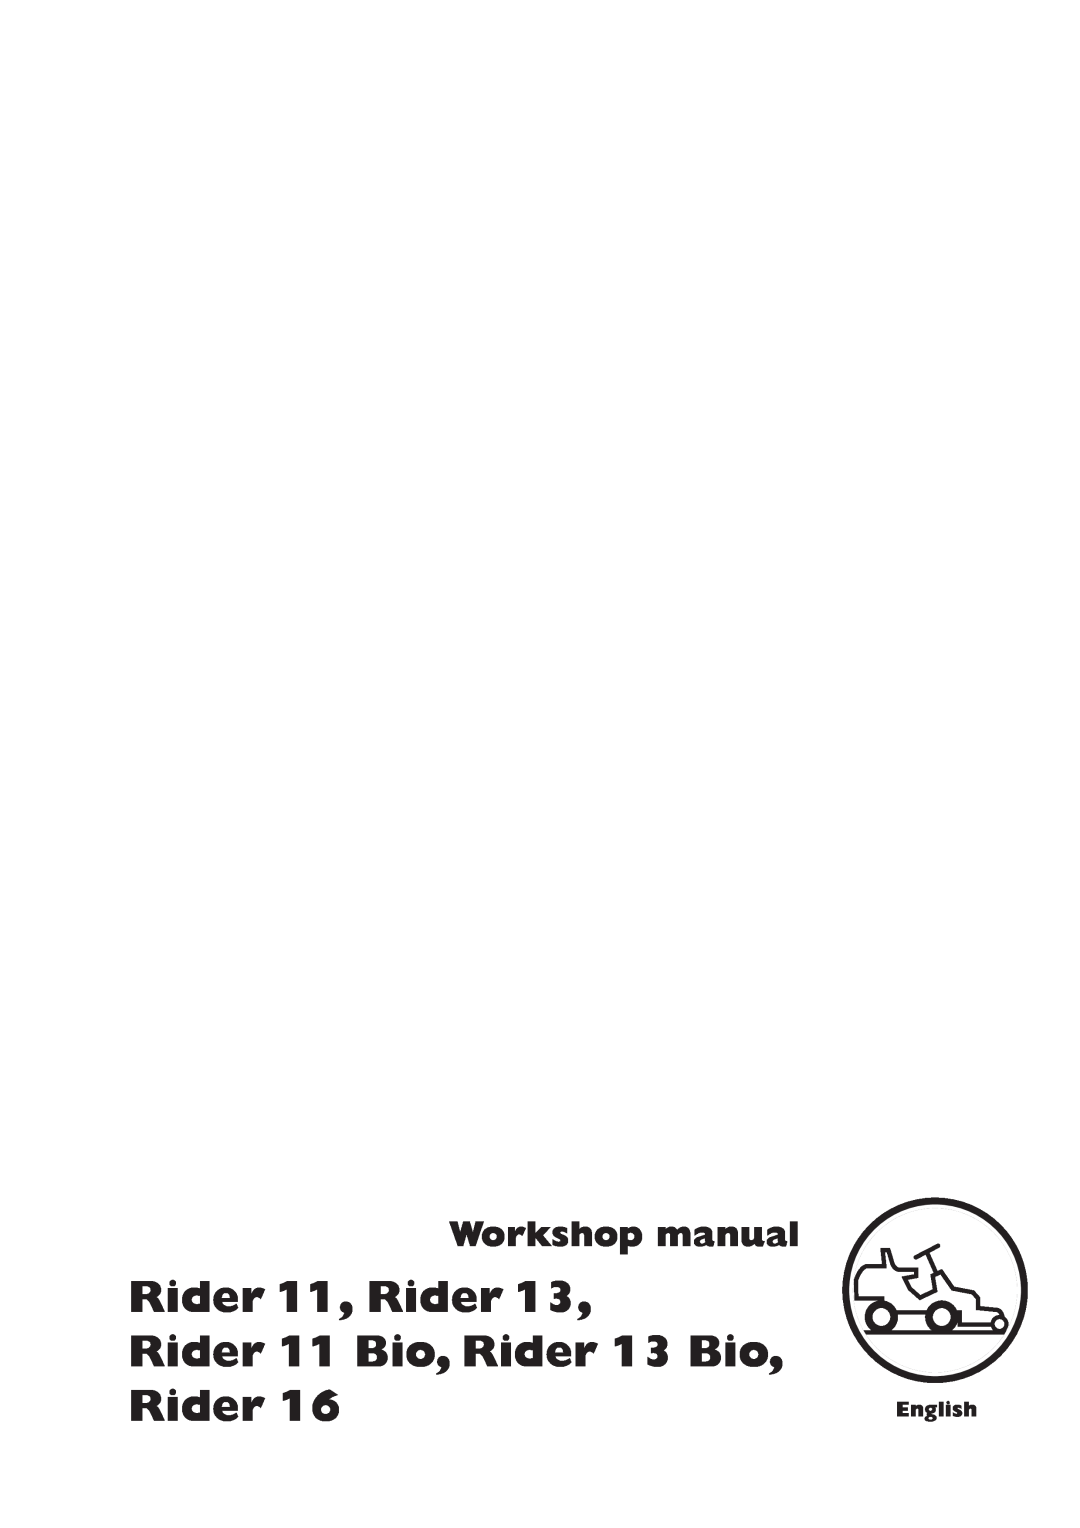 Briggs & Stratton RIDER 11 BIO manual Rider 11, Rider Rider 11 Bio, Rider 13 Bio, Rider, Workshop manual, English 